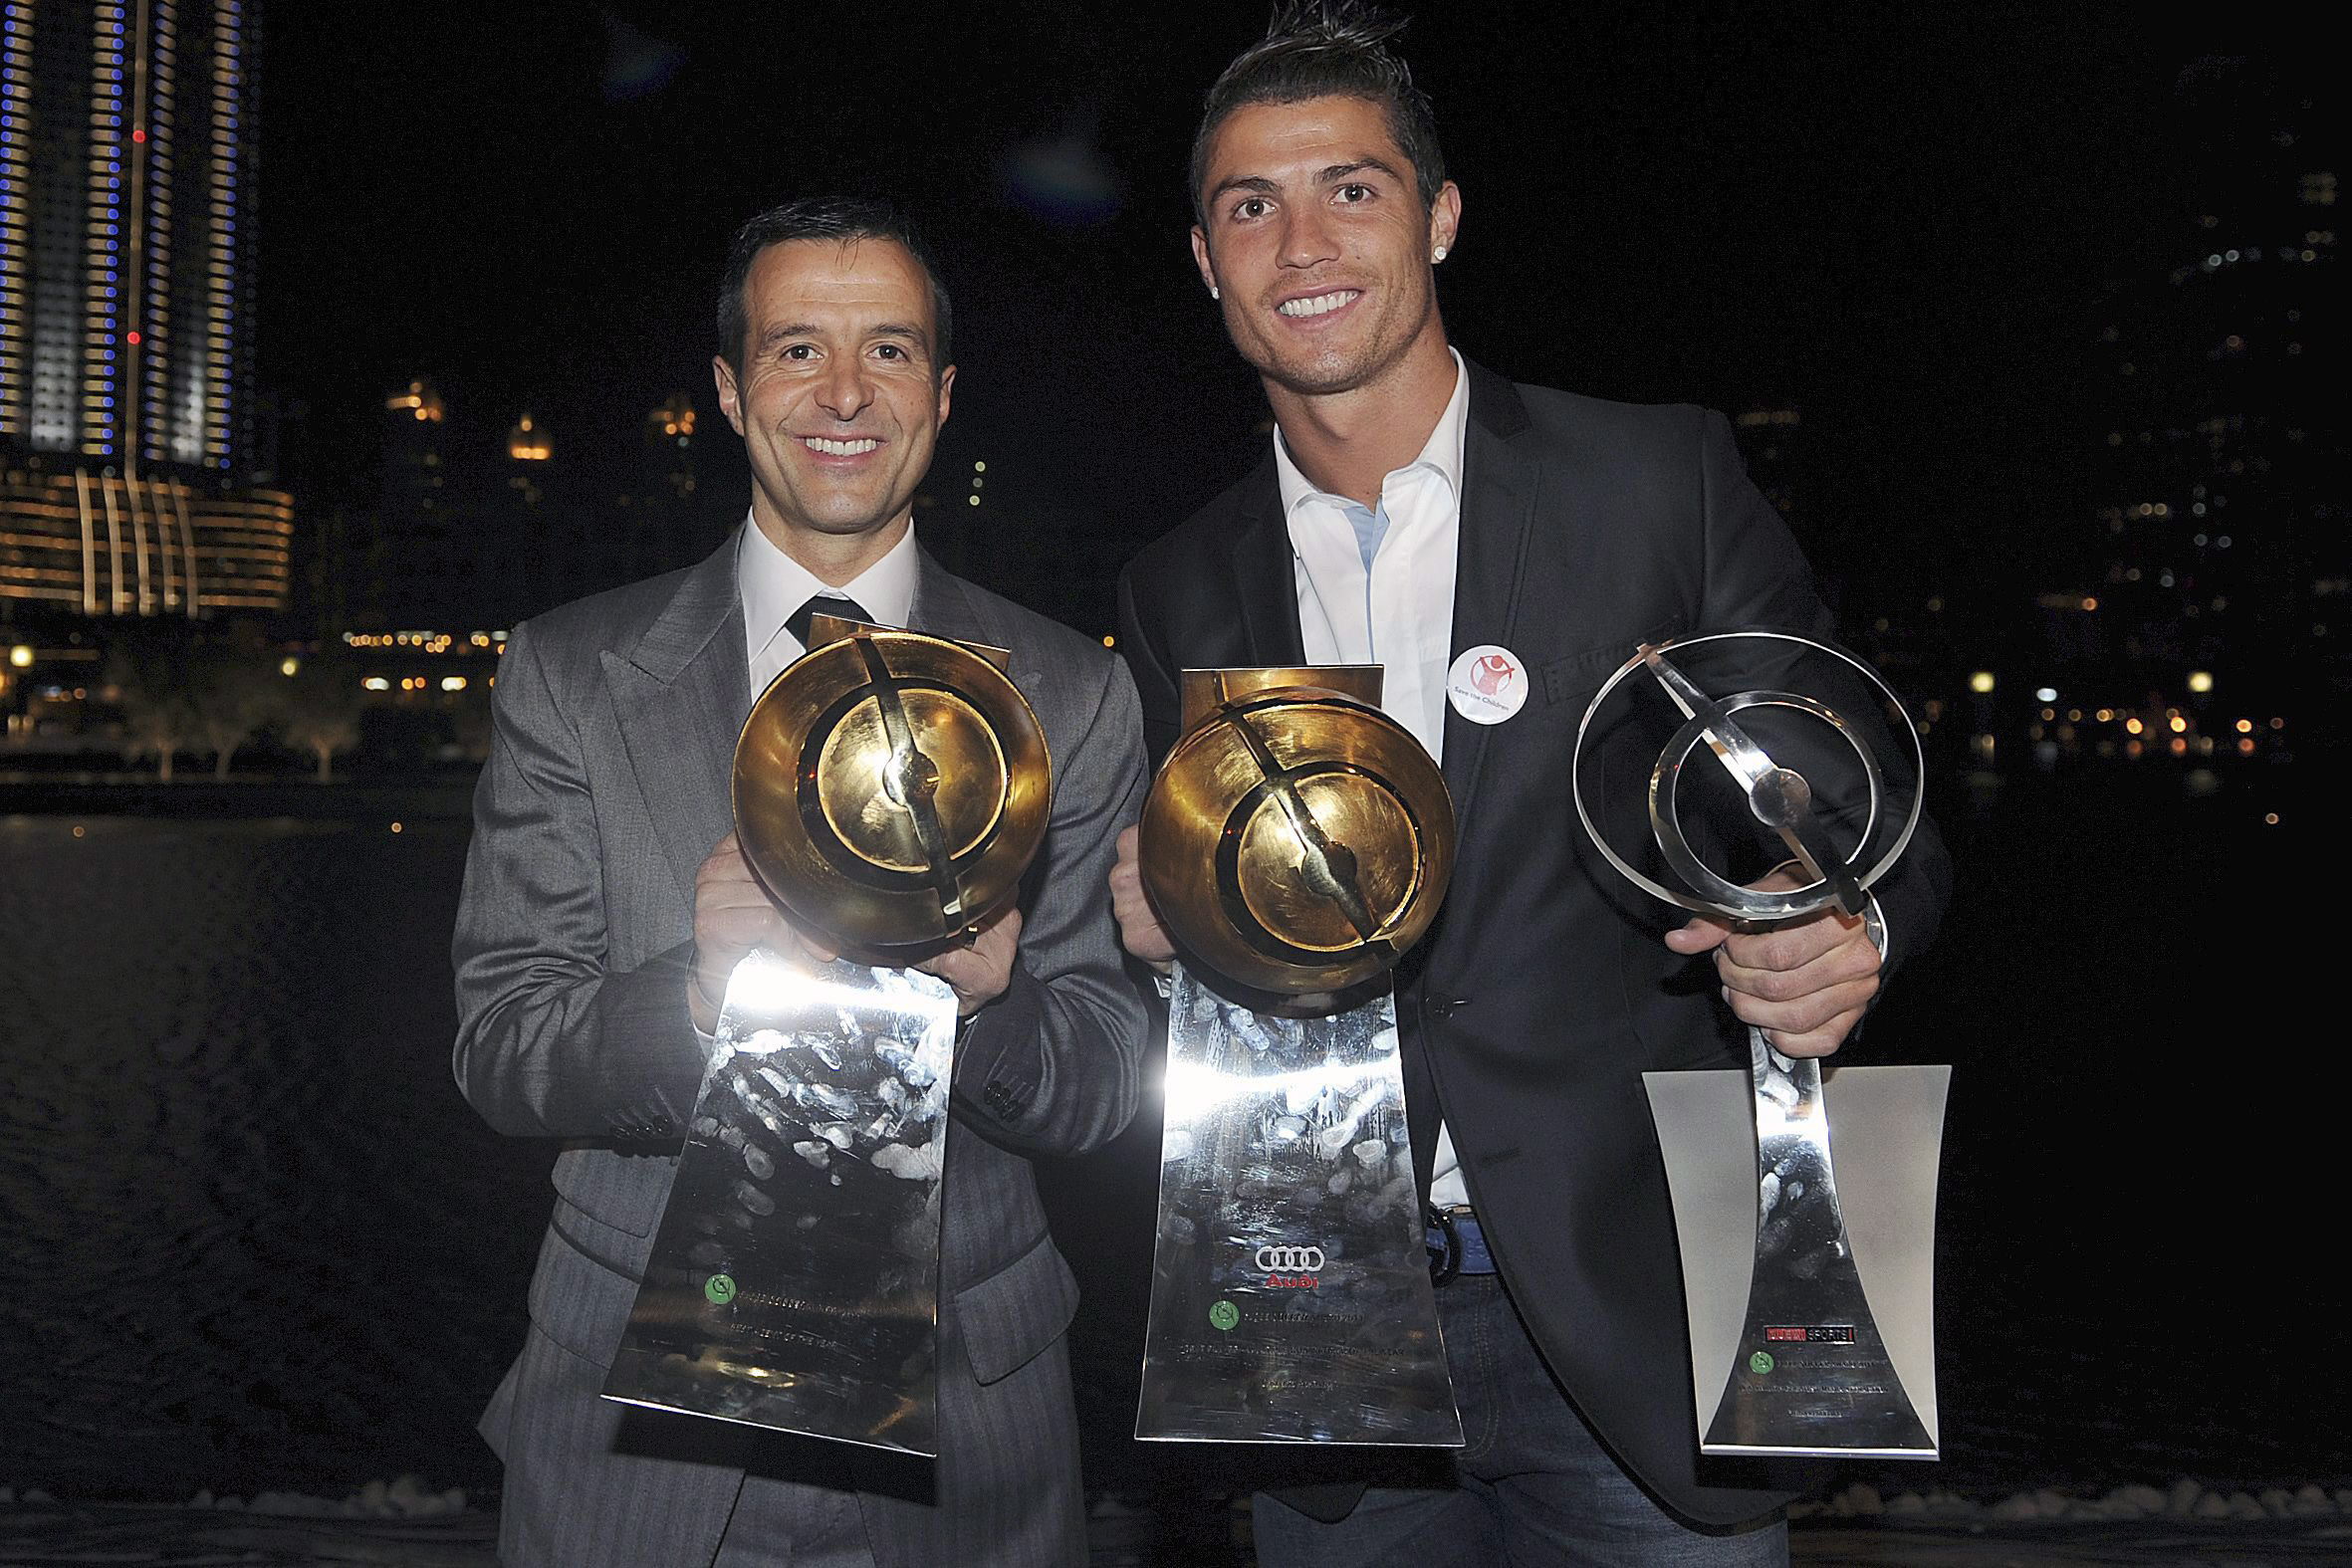 DUB03. DUBAI (EMIRATOS ÁRABES UNIDOS), 28/12/11.- El jugador de Portugal Cristiano Ronaldo (d) del Real Madrid y su manager orge Mendes (i) posan con los trofeos que le fueron entregados a Ronaldo hoy, 28 de diciembre de 2011, durante la ceremonia de los Premios Globo de Fútbol en Dubai (EAU). EFE/ JORGE MONTEIRO  EAU FÚTBOL